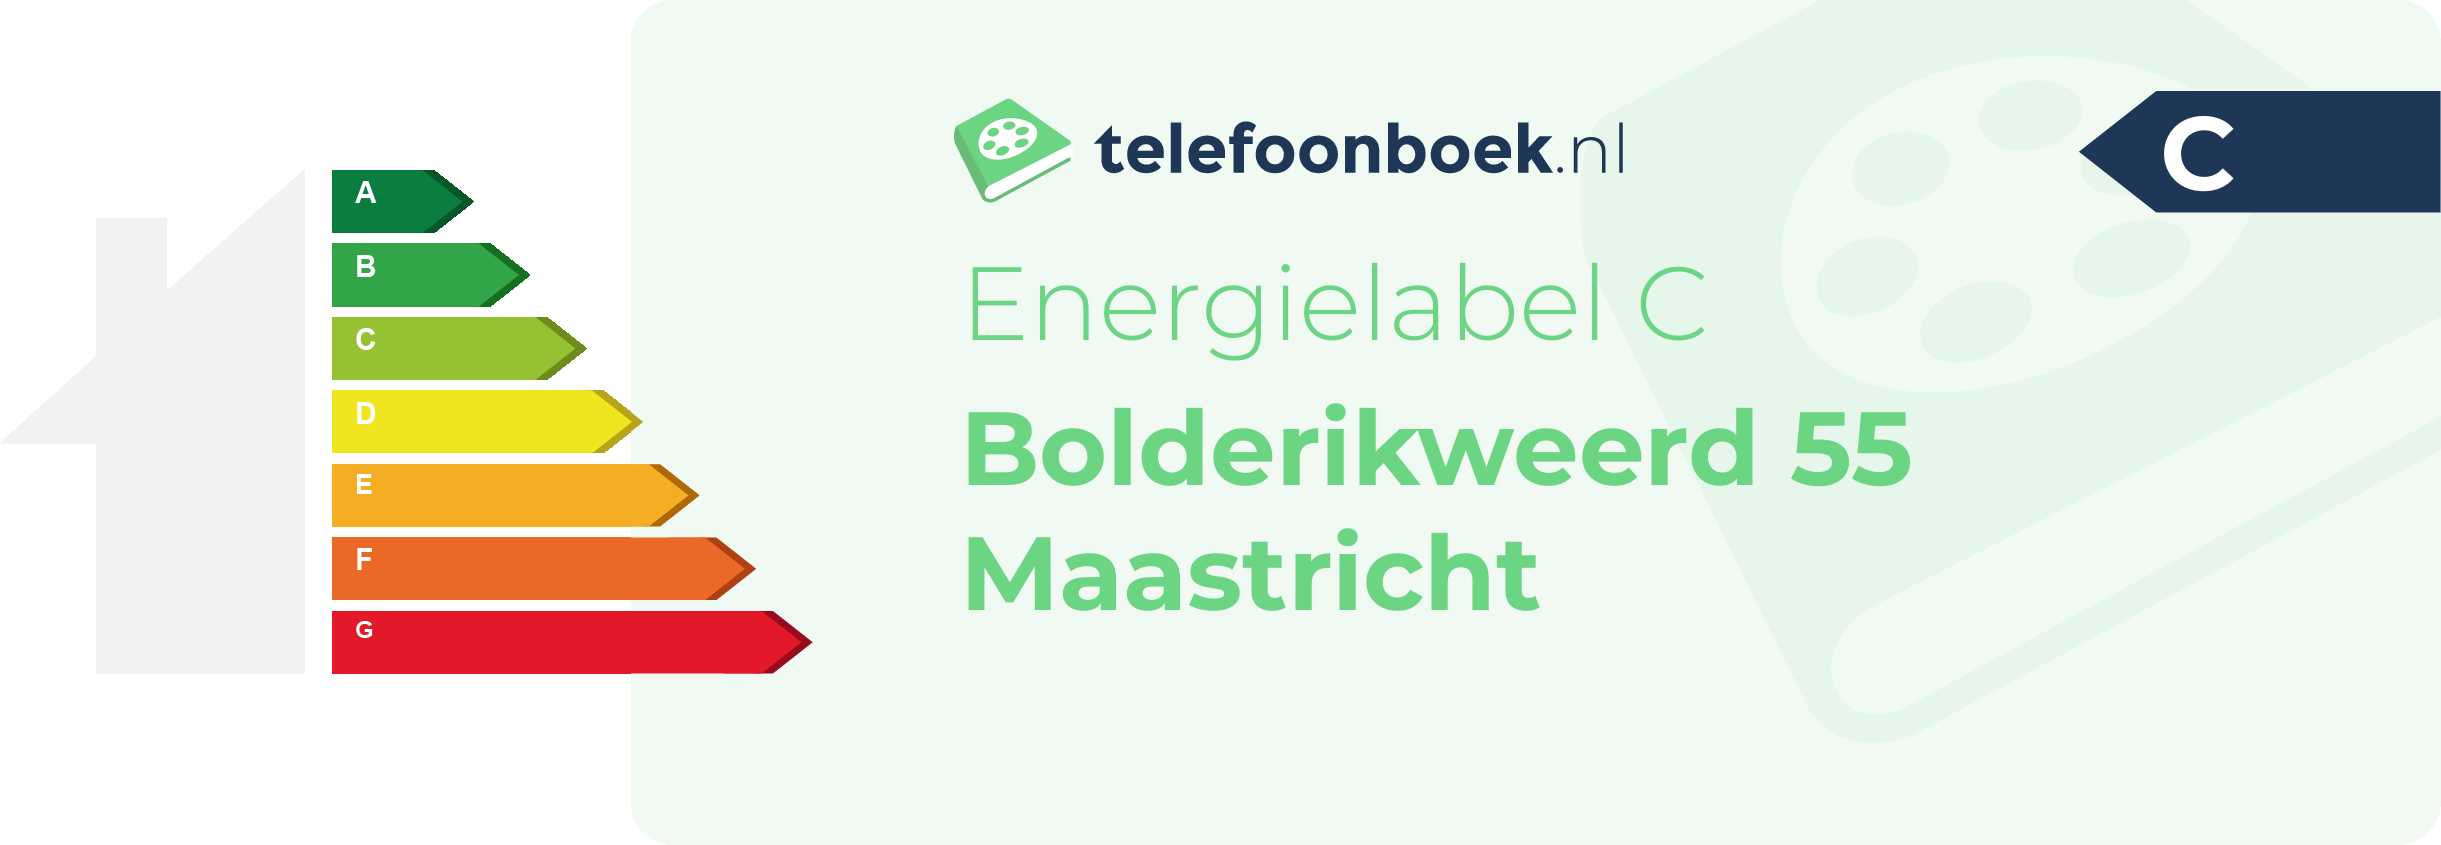 Energielabel Bolderikweerd 55 Maastricht